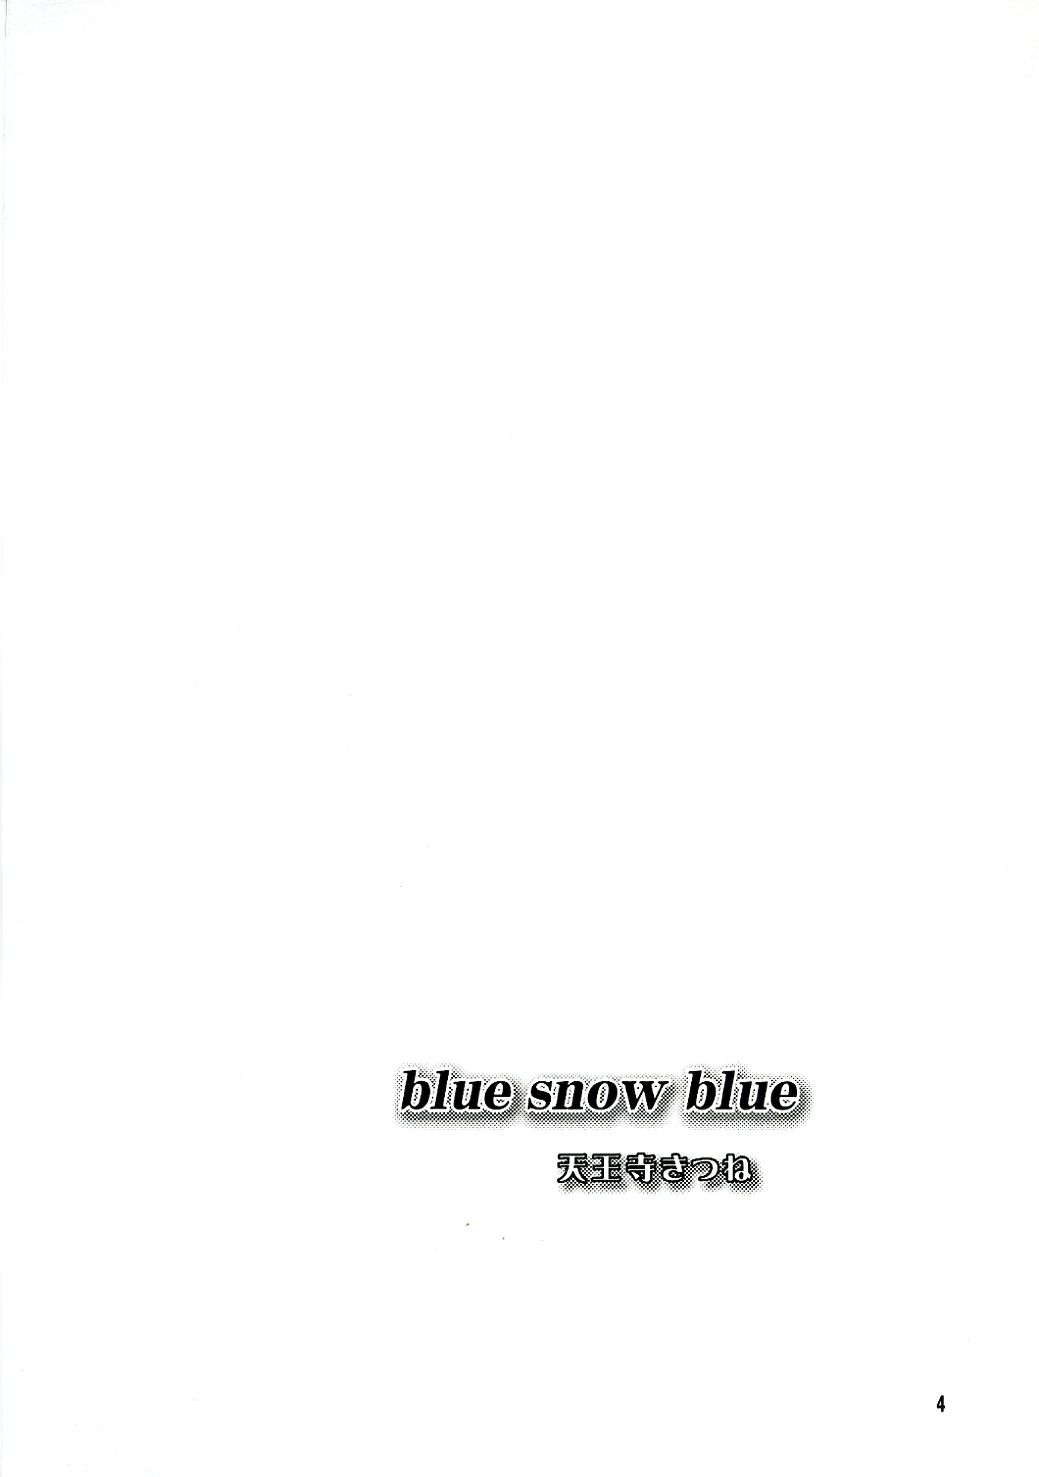 [Waku Waku Doubutsuen (Tennouji Kitsune)] blue snow blue ～scene.4～ [わくわく動物園 (Tennouji Kitsune)] blue snow blue ～scene.4～